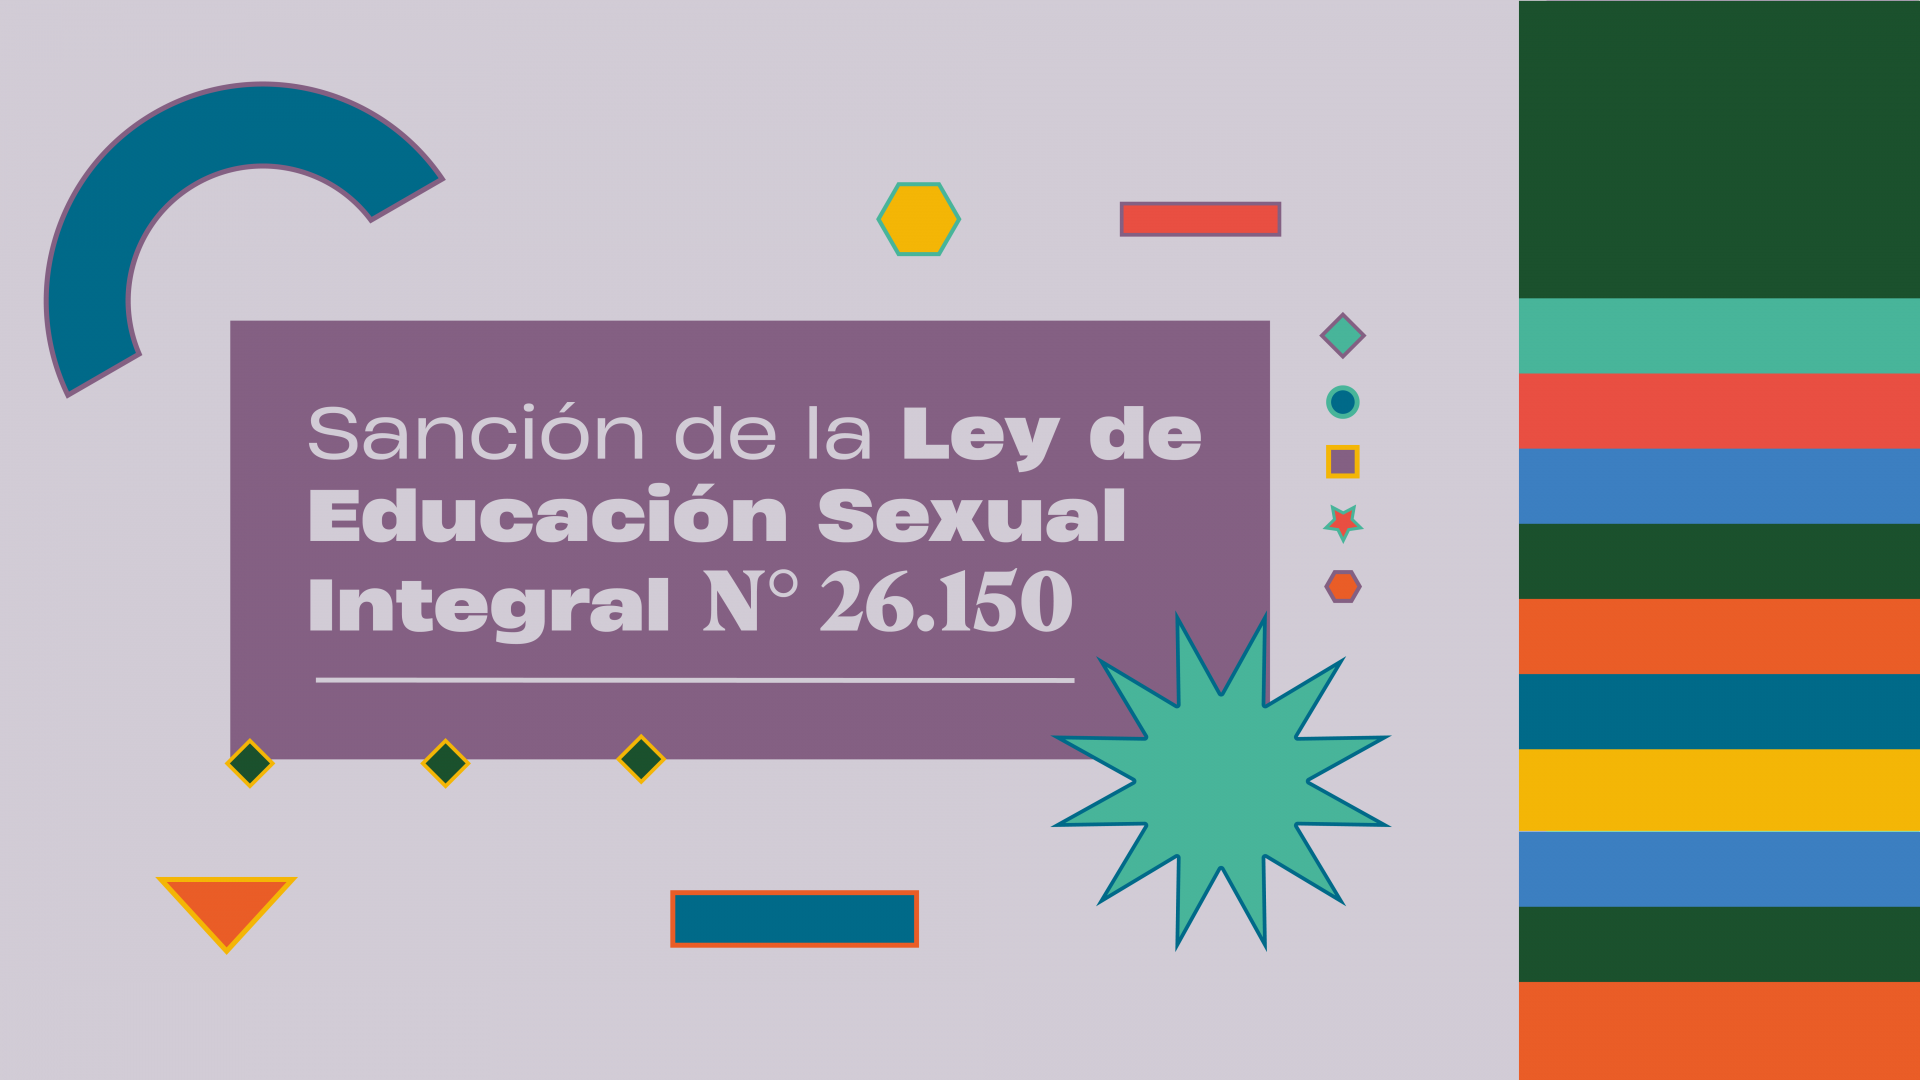 Se Cumplen 17 Años De La Sanción De La Ley De Educación Sexual Integral Argentinagobar 5397